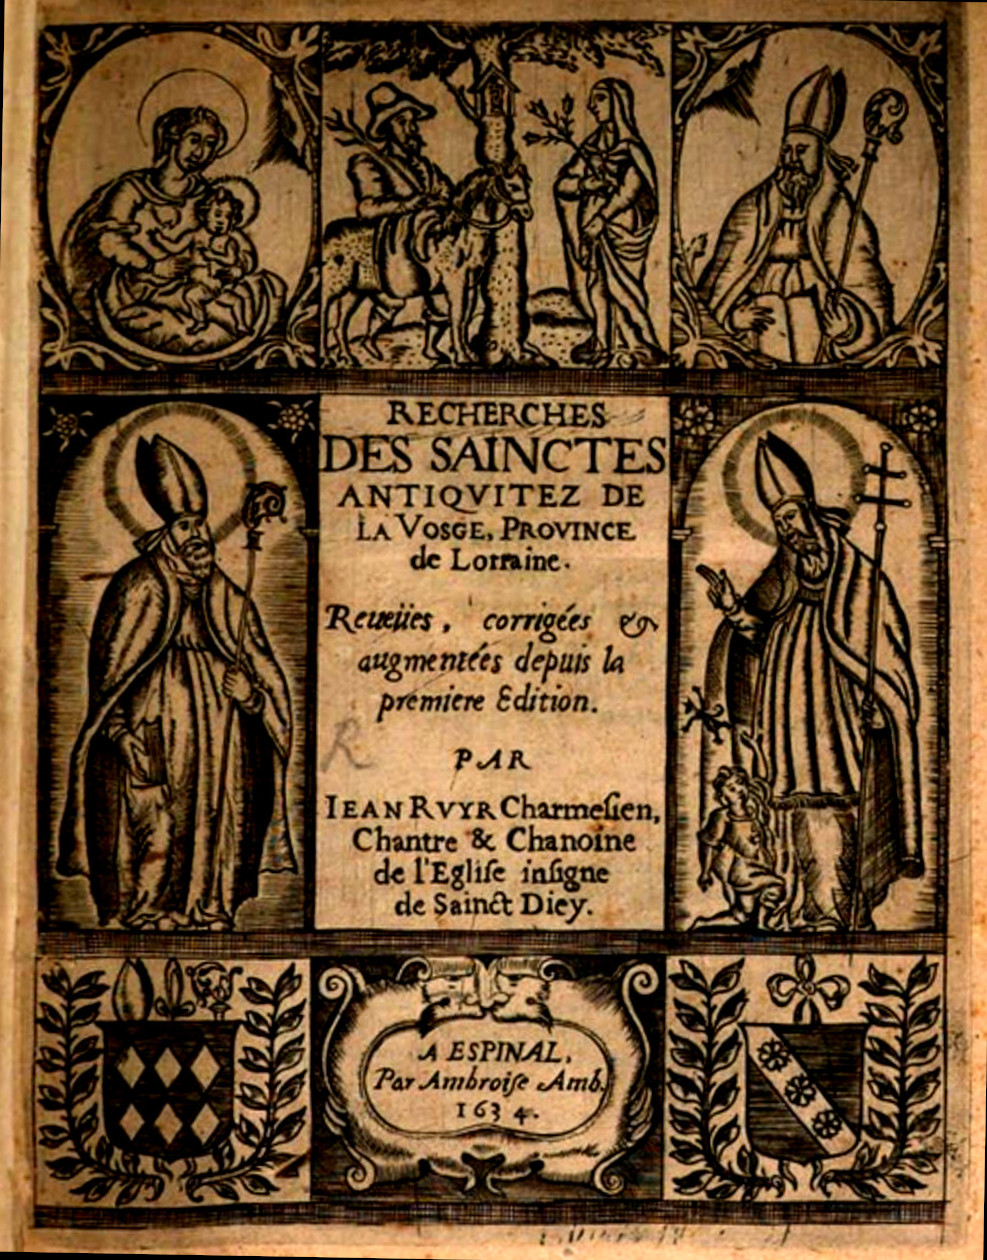 La page de garde de l'édition de 1634 de <i>Recherches des sainctes antiquitez de la Vosge</i> dûe à Amb. Ambroise.<br>À gauche saint Dieudonné (Déodat),<br>à droite saint Hydulphe, continuateur symbolique de Déodat.